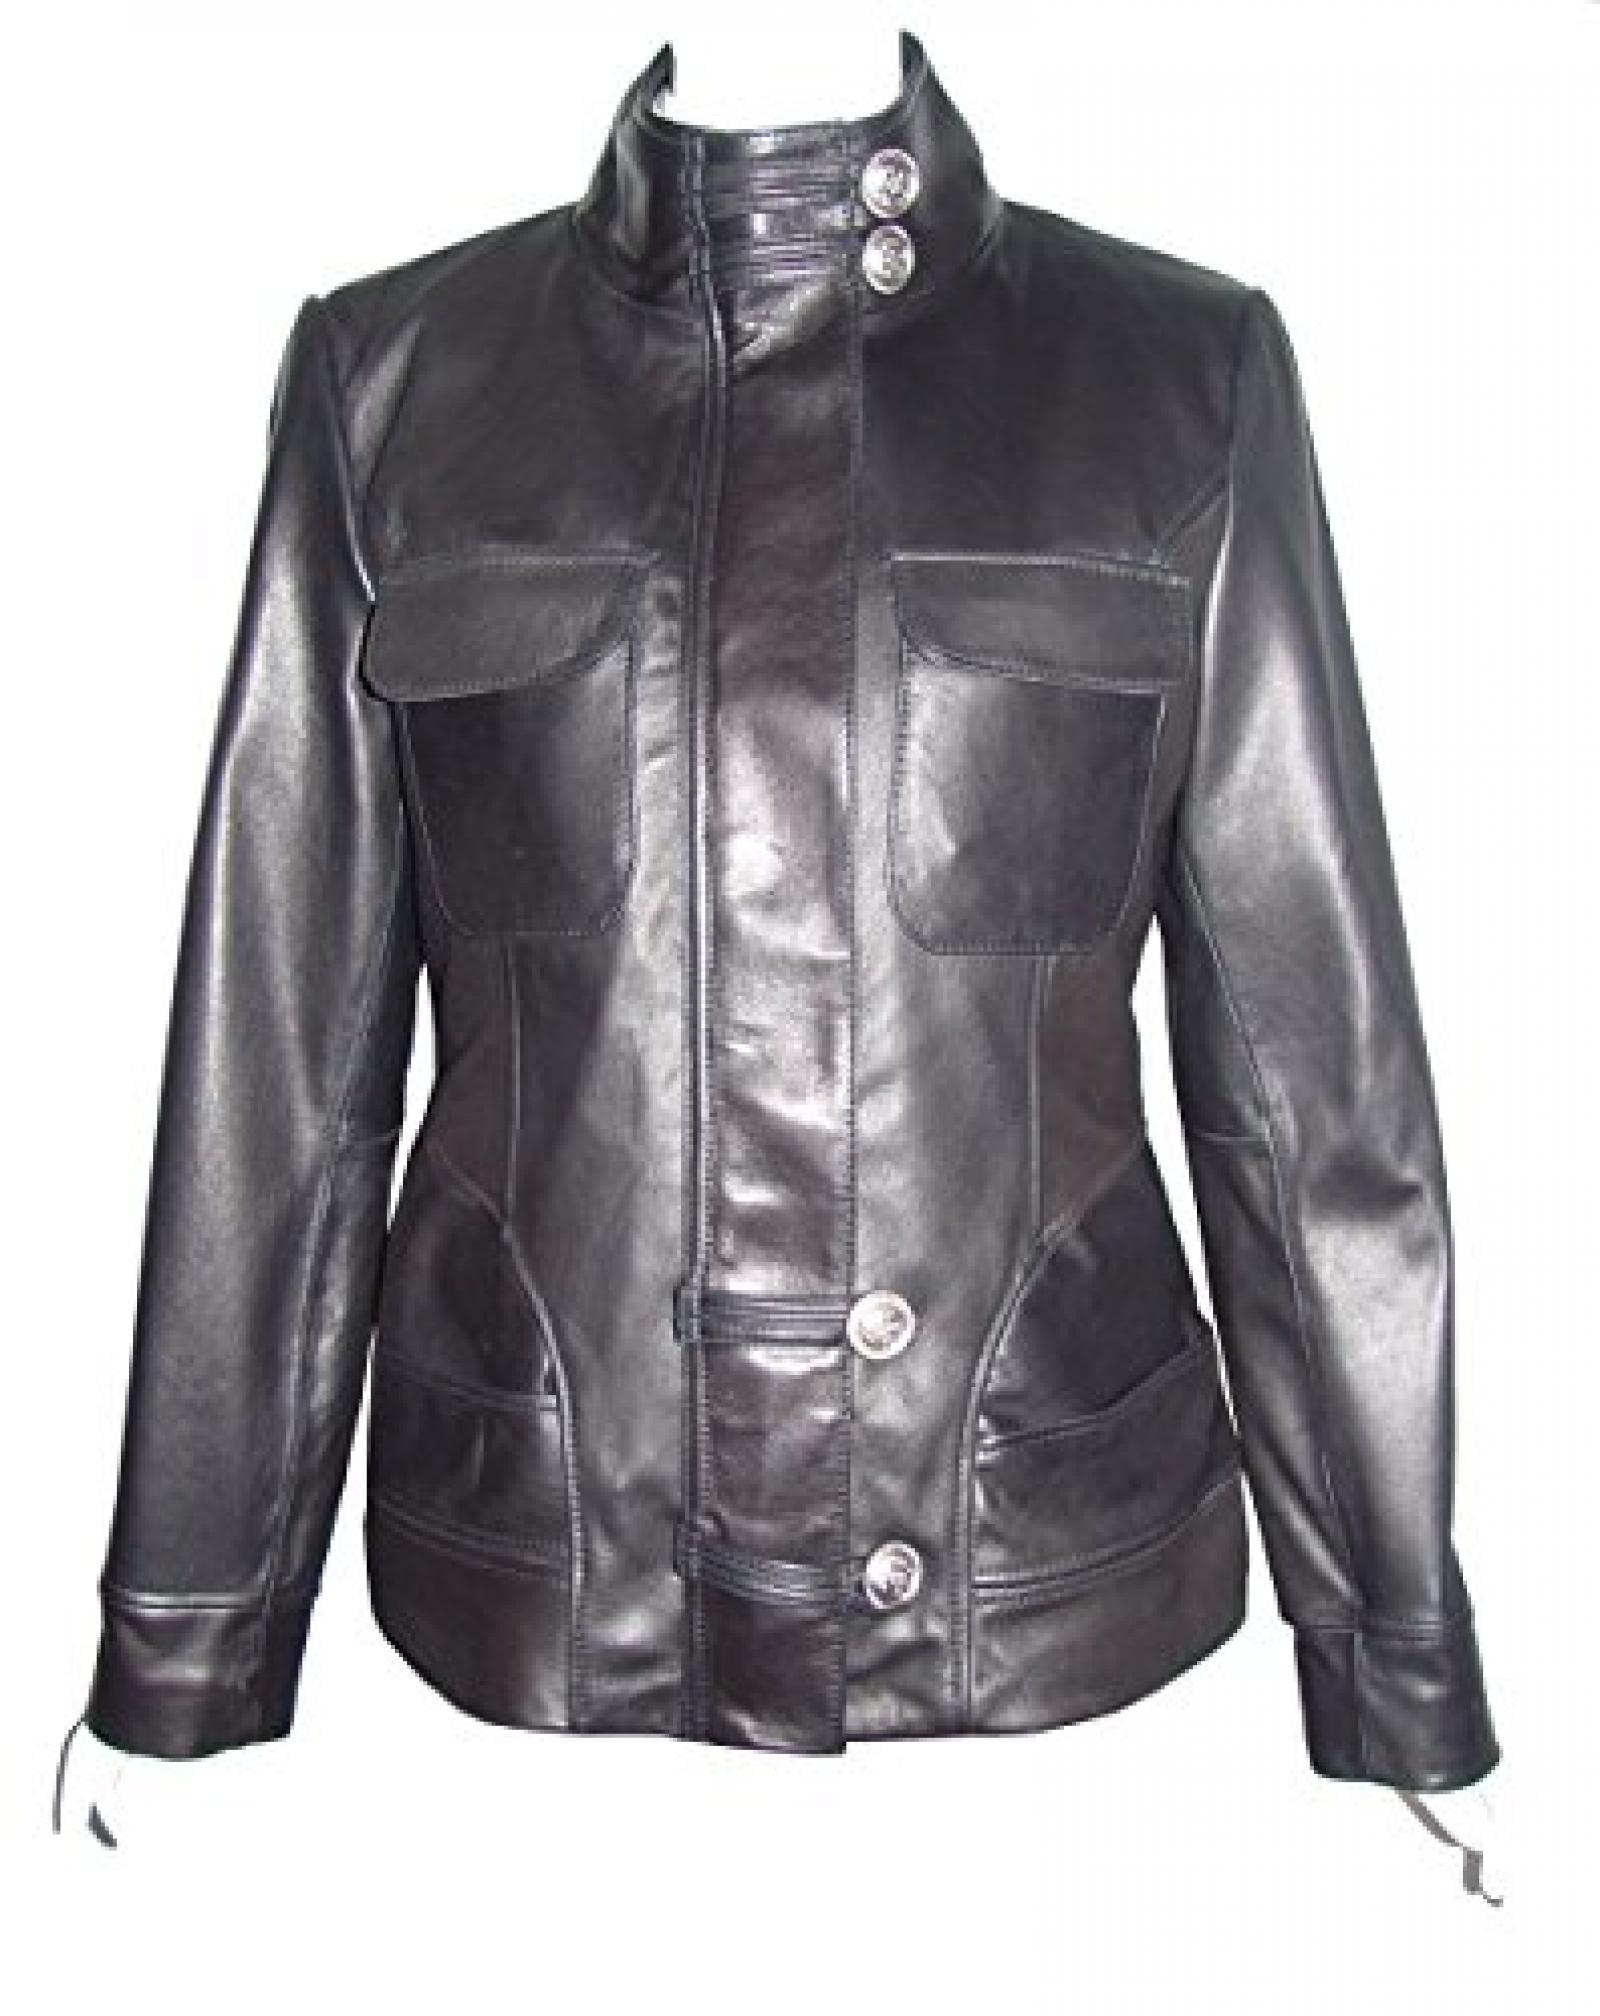 Nettailor Women PLUS SIZE 4192 Soft Leather Casual Jacket Flap Chest Pocket 